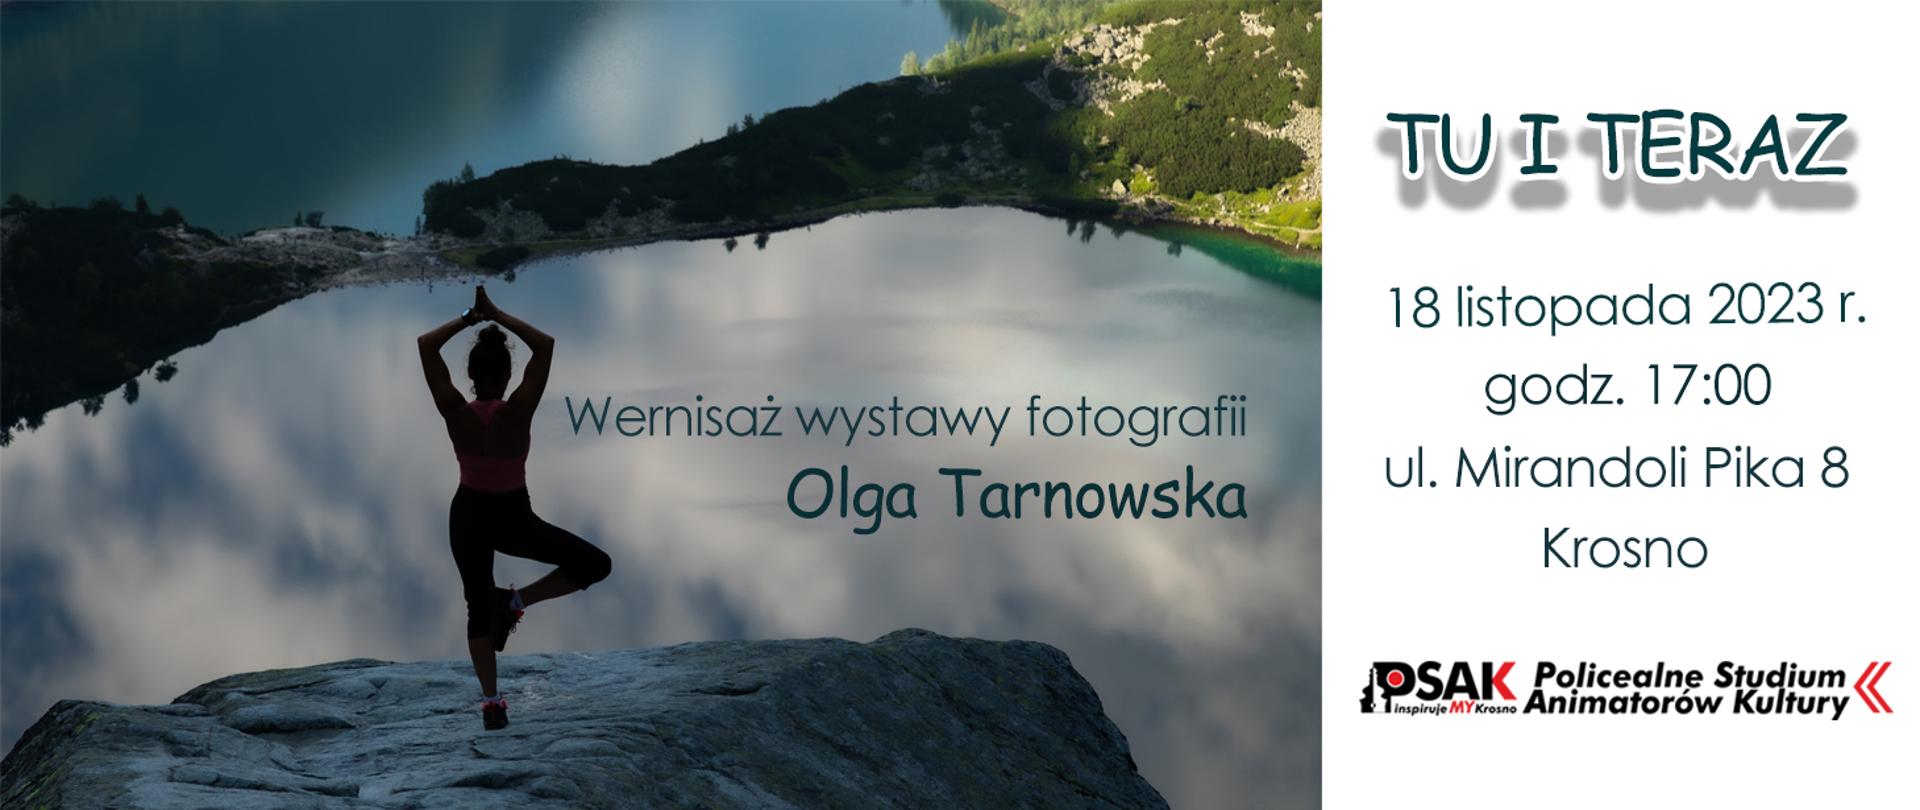 Plakat informujący o wystawie fotograficznej Olgi Tarnowskiej. W lewej części plakatu kobieta stoi na skale na tle jeziora i gór. Po prawej części plakatu na białym tle tytuł wystawy, data i miejsce.